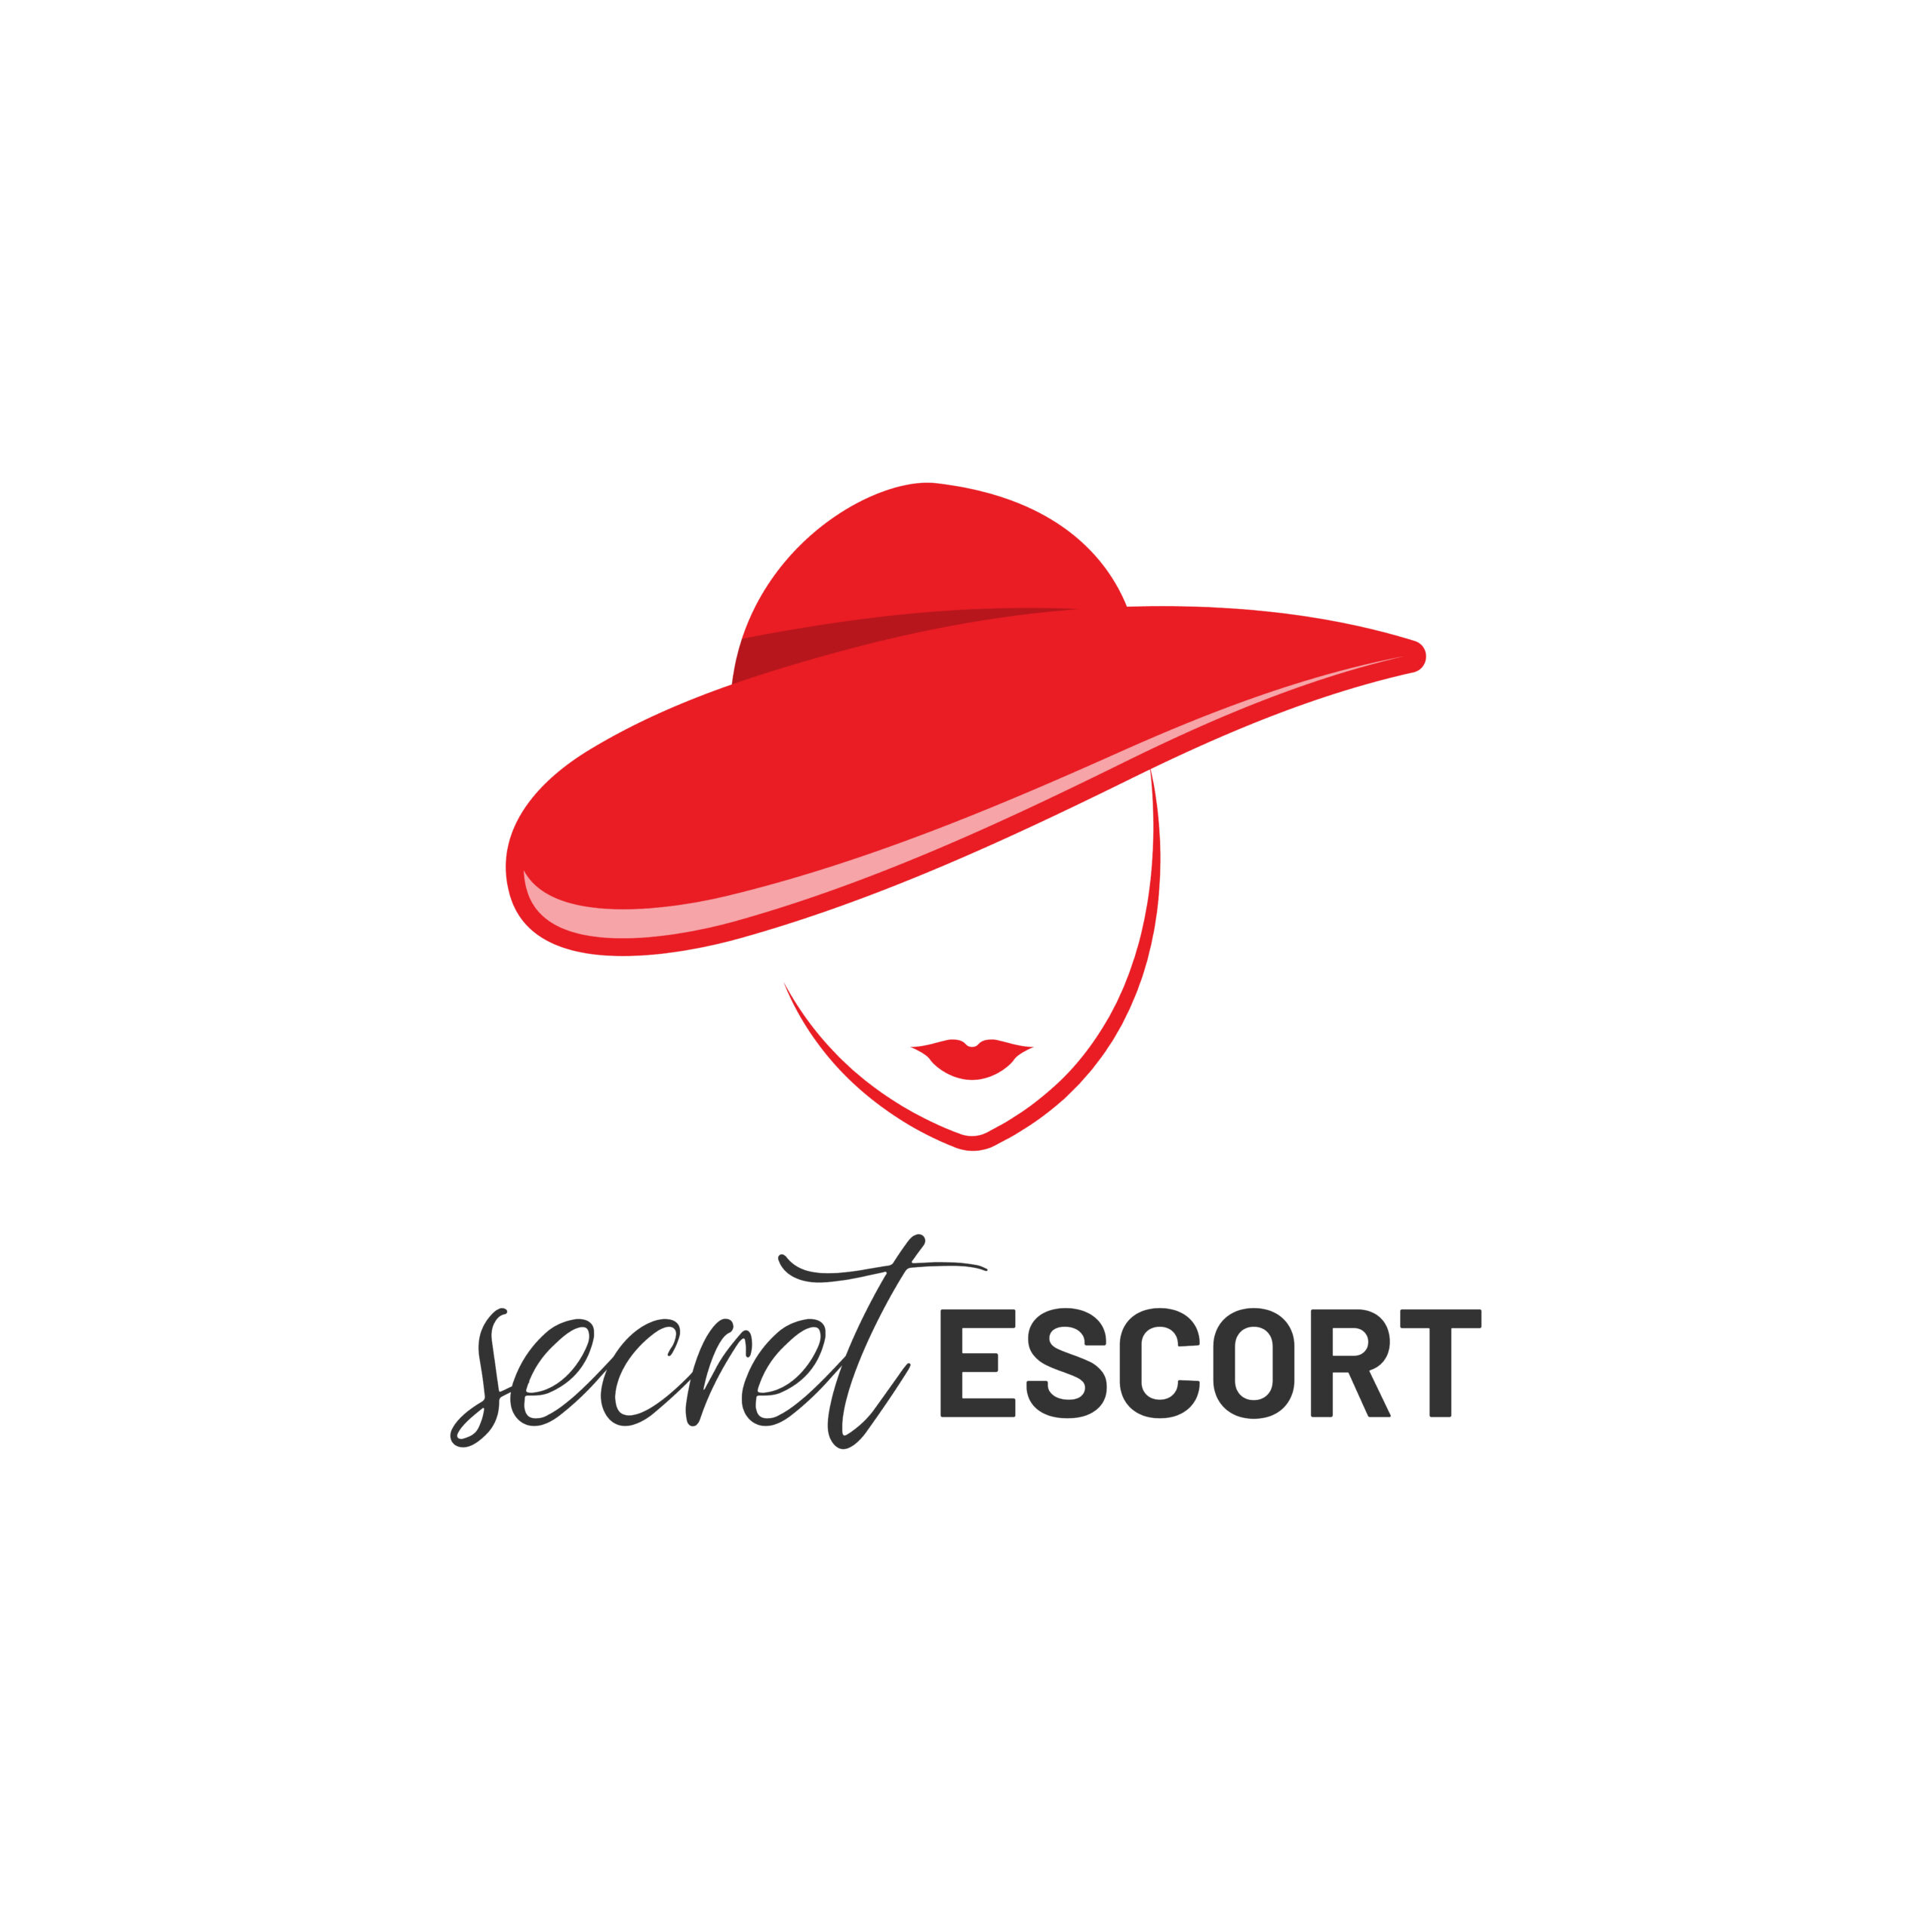 Secret Escort – Begleitservice mit sympathischen Frauen